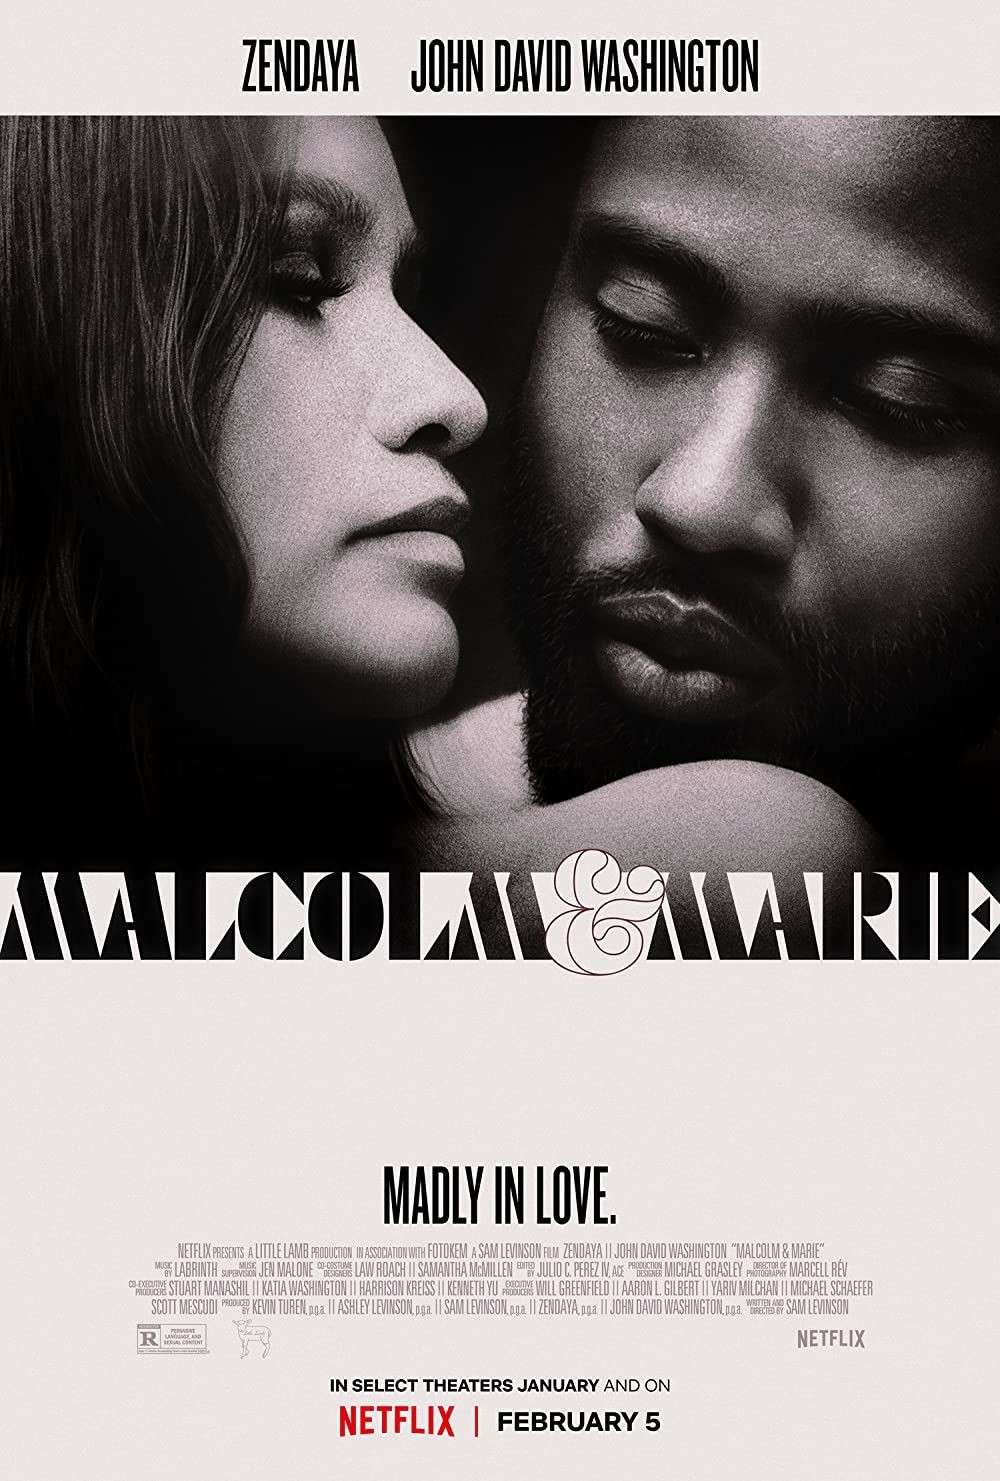 IMDb'de en popüler film: Malcolm&Marie - Sayfa 1